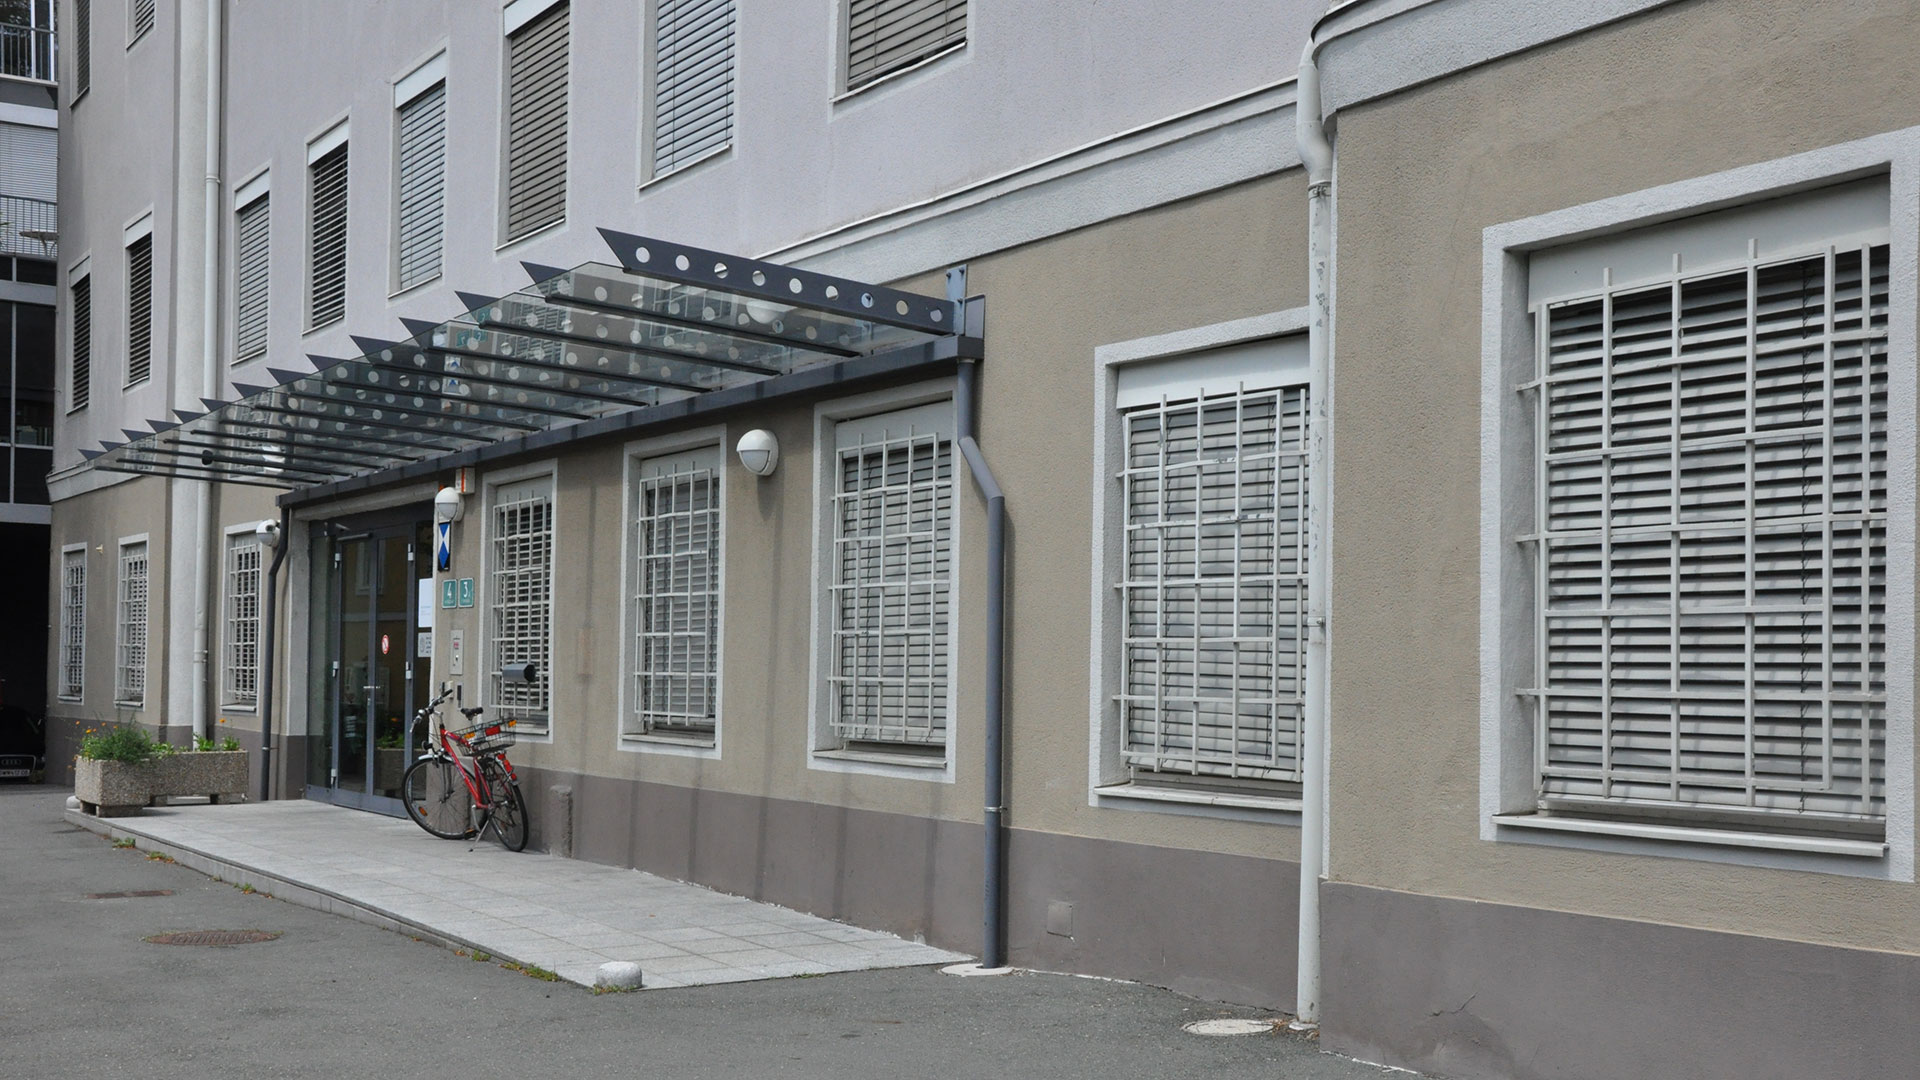 An einer braucnen Häuserfront ist der überdachte Eingang des Stadtarchives Graz zu sehen. Vor dem Eingang ist ein Fahrrad geparkt.